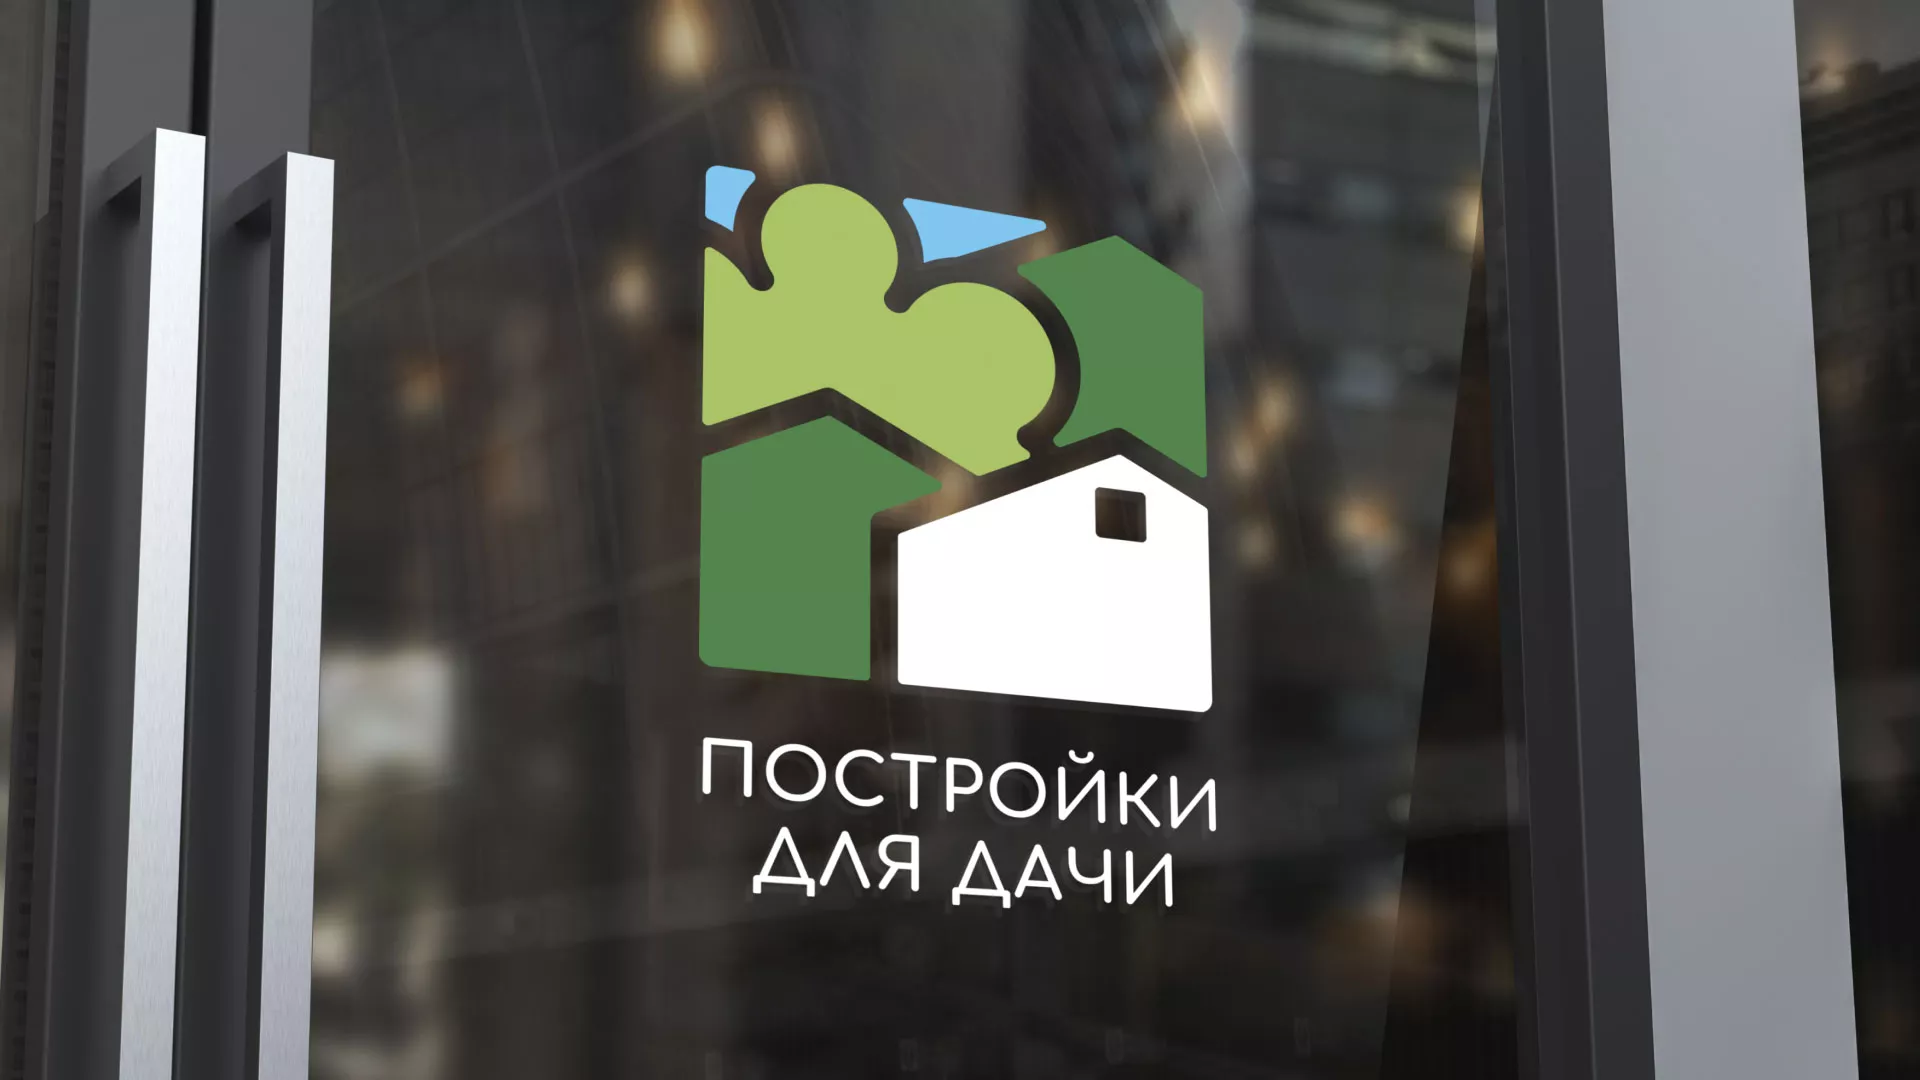 Разработка логотипа в Карабаше для компании «Постройки для дачи»